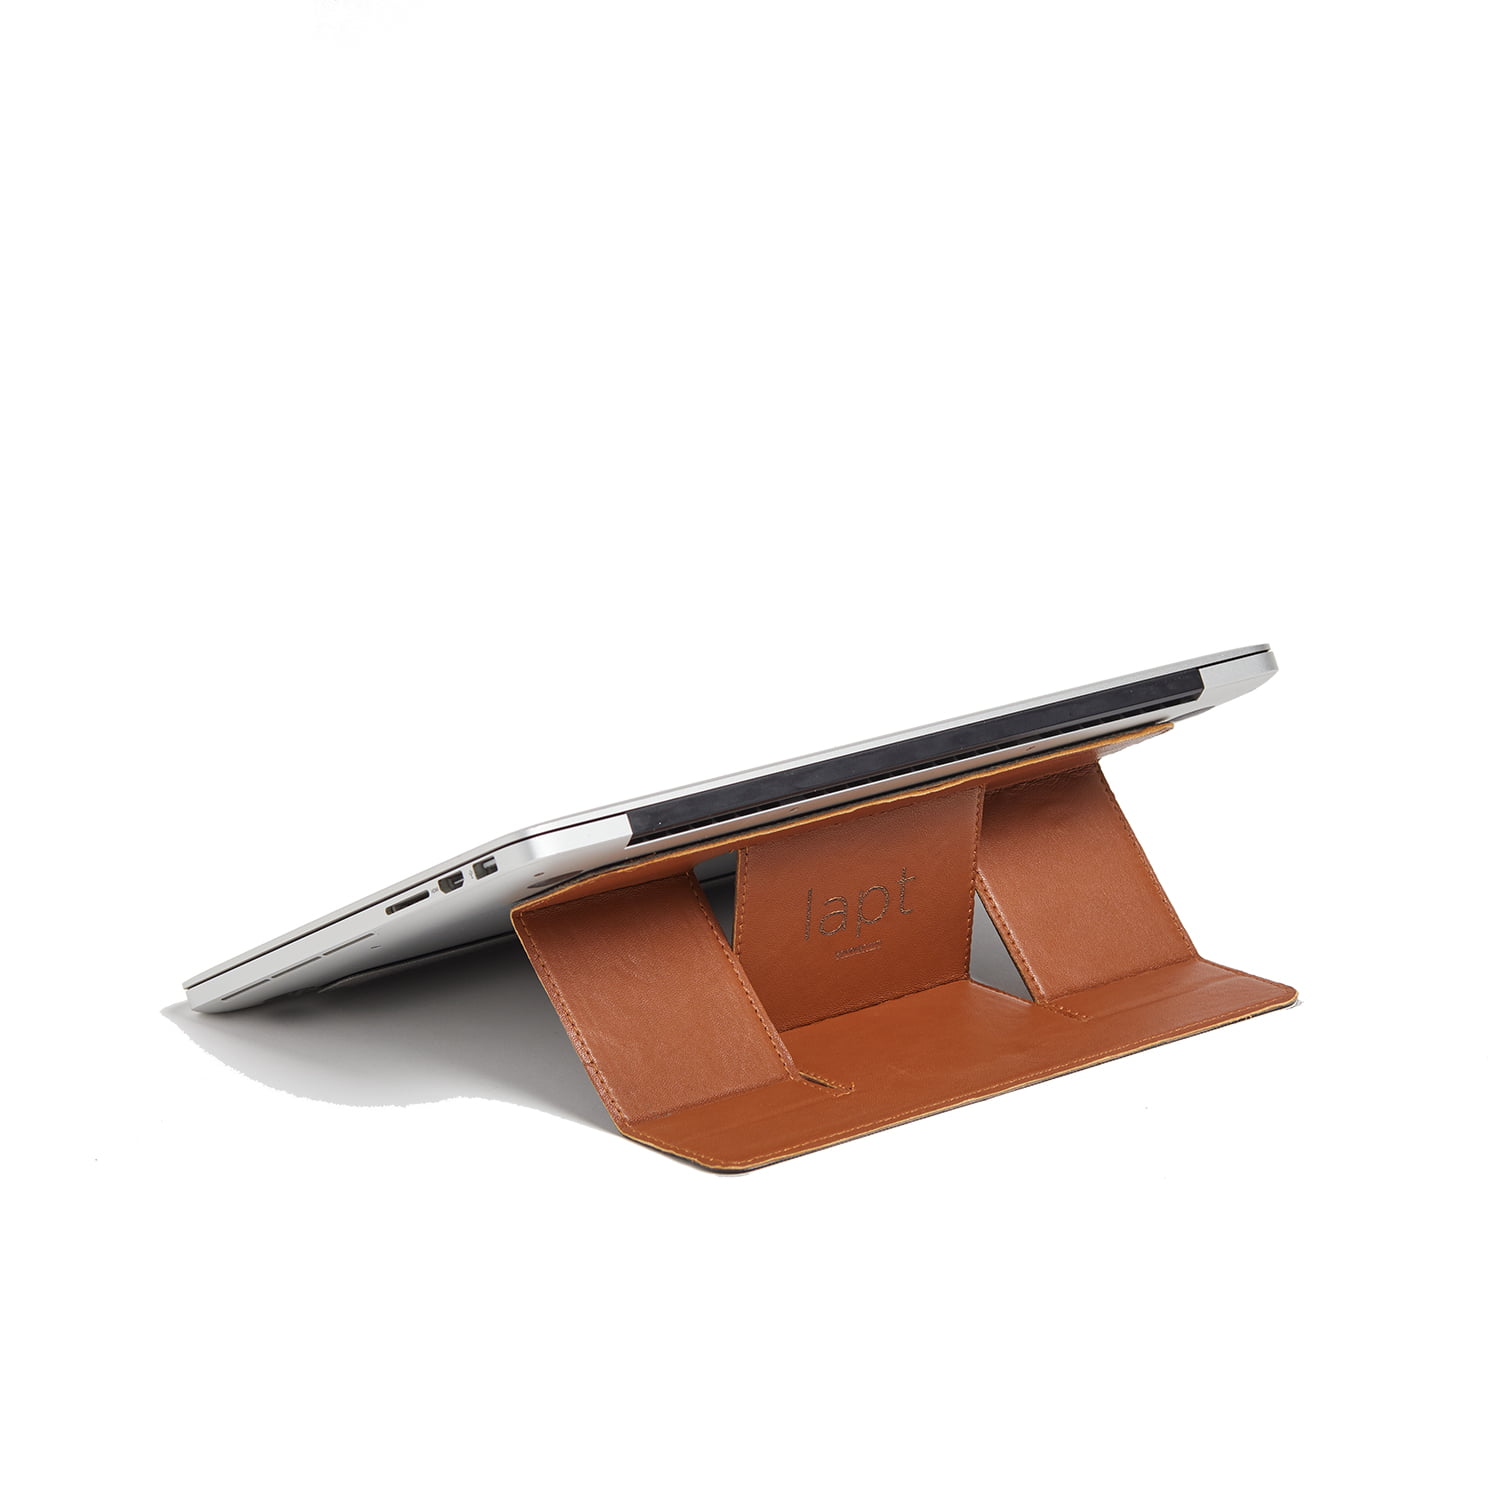 LAPT - Deri Laptop Standı ; Muhteşem, İnce, Hafif ve Şık Yeni Nesil Katlanabilir Laptop Standı